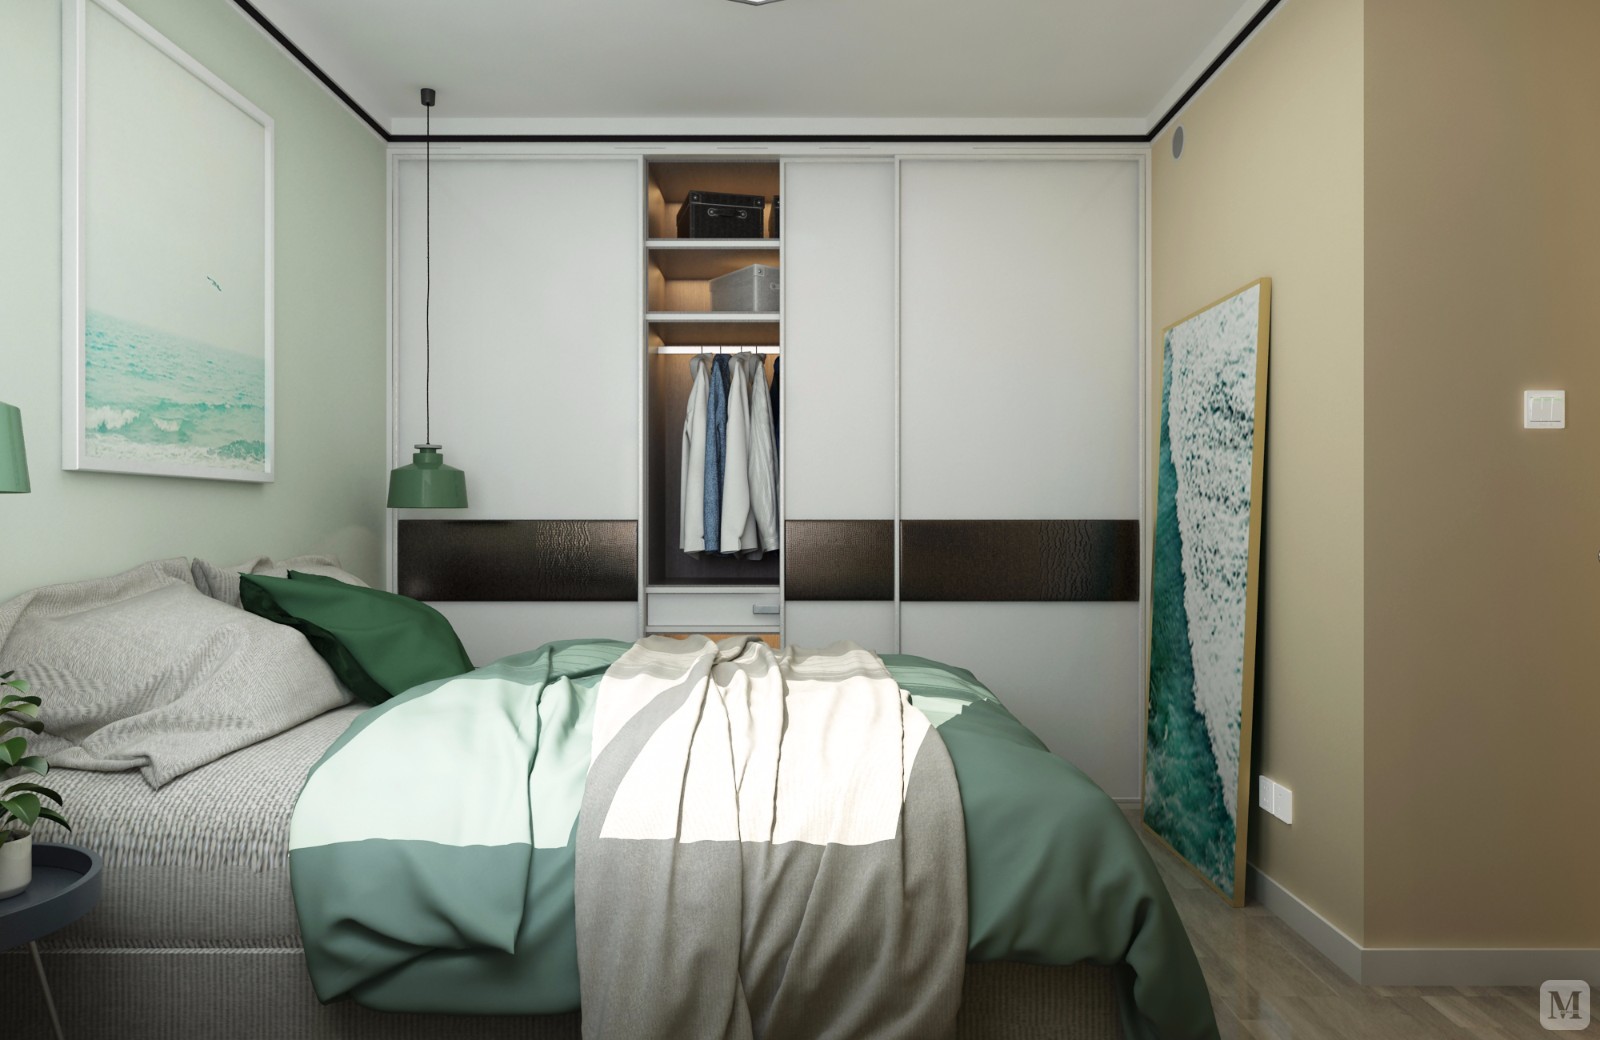 装饰画和床品搭配给休眠空间营造清新美好的环境。近3米的大衣柜，是小户型的收纳担当。简单的置物架，小块面的颜色对比，活跃空间气氛。